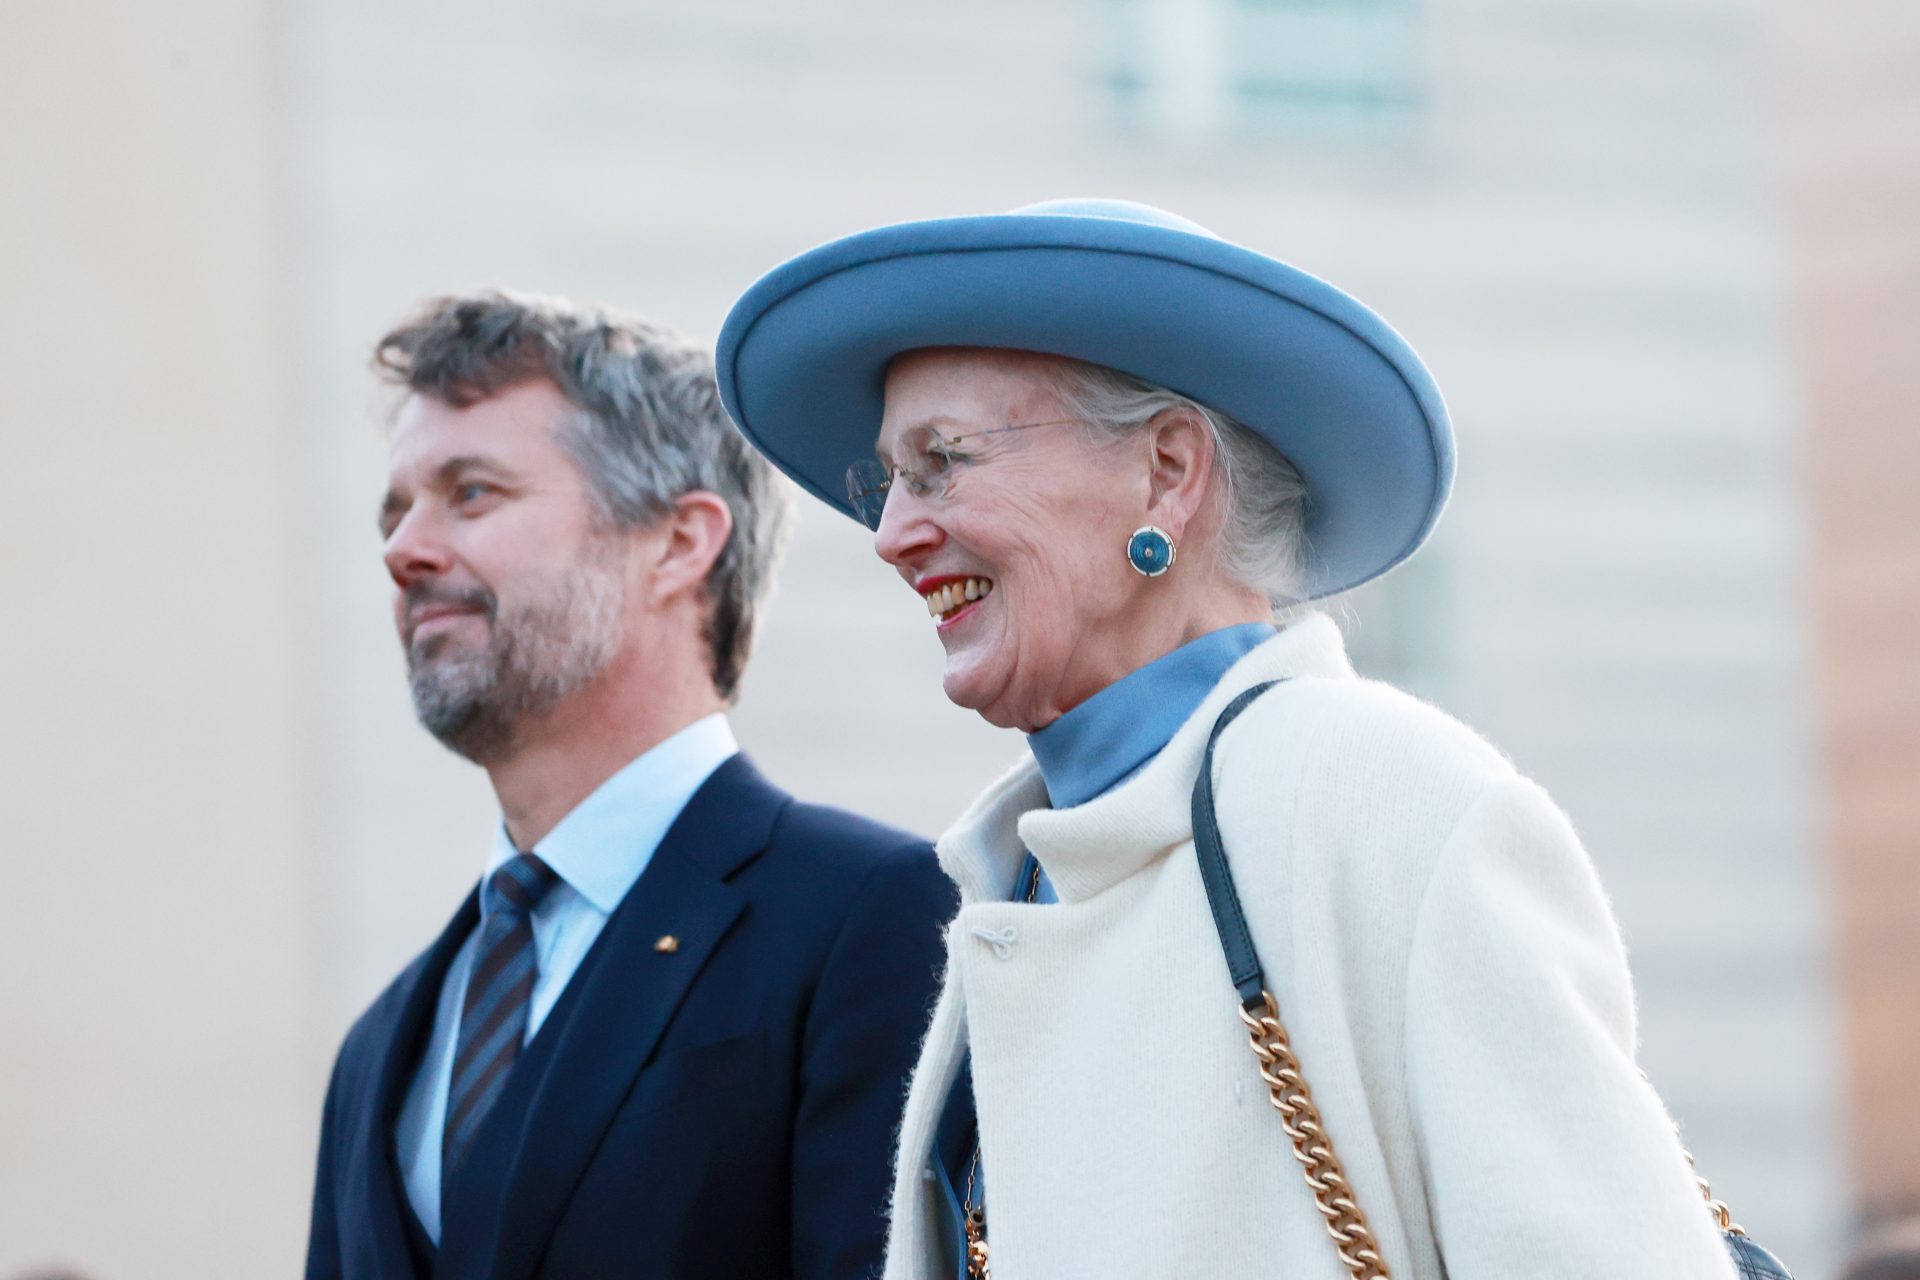 La reine Margrethe II n'approuvait pas les petites amies de son fils